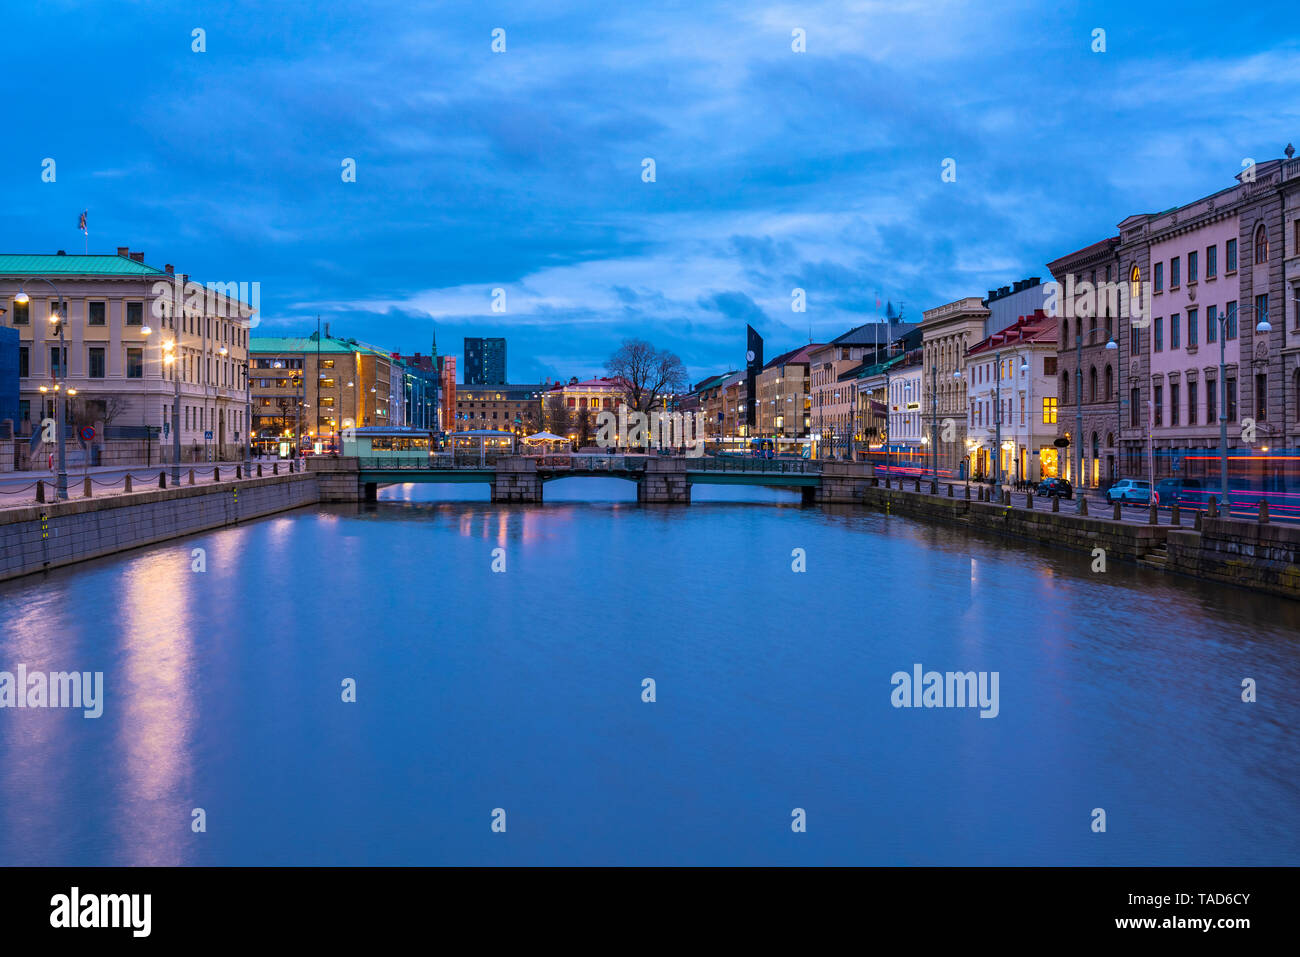 Sweden, Gothenburg, historic city center with Tyska Bron and Brunnsparken in background Stock Photo